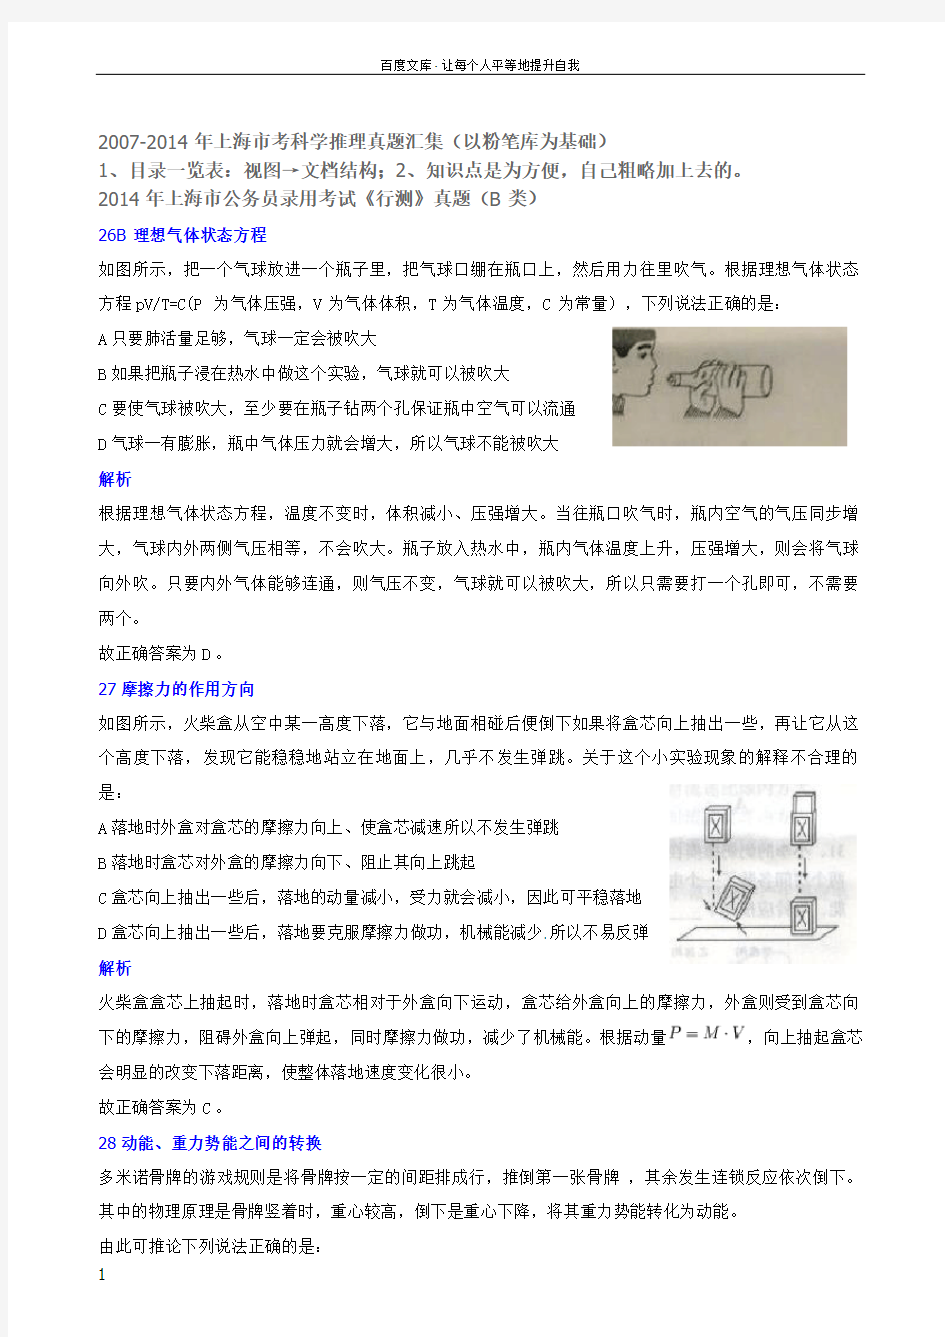 广东省公务员科学推理备考上海市科学推理真题(0714年)